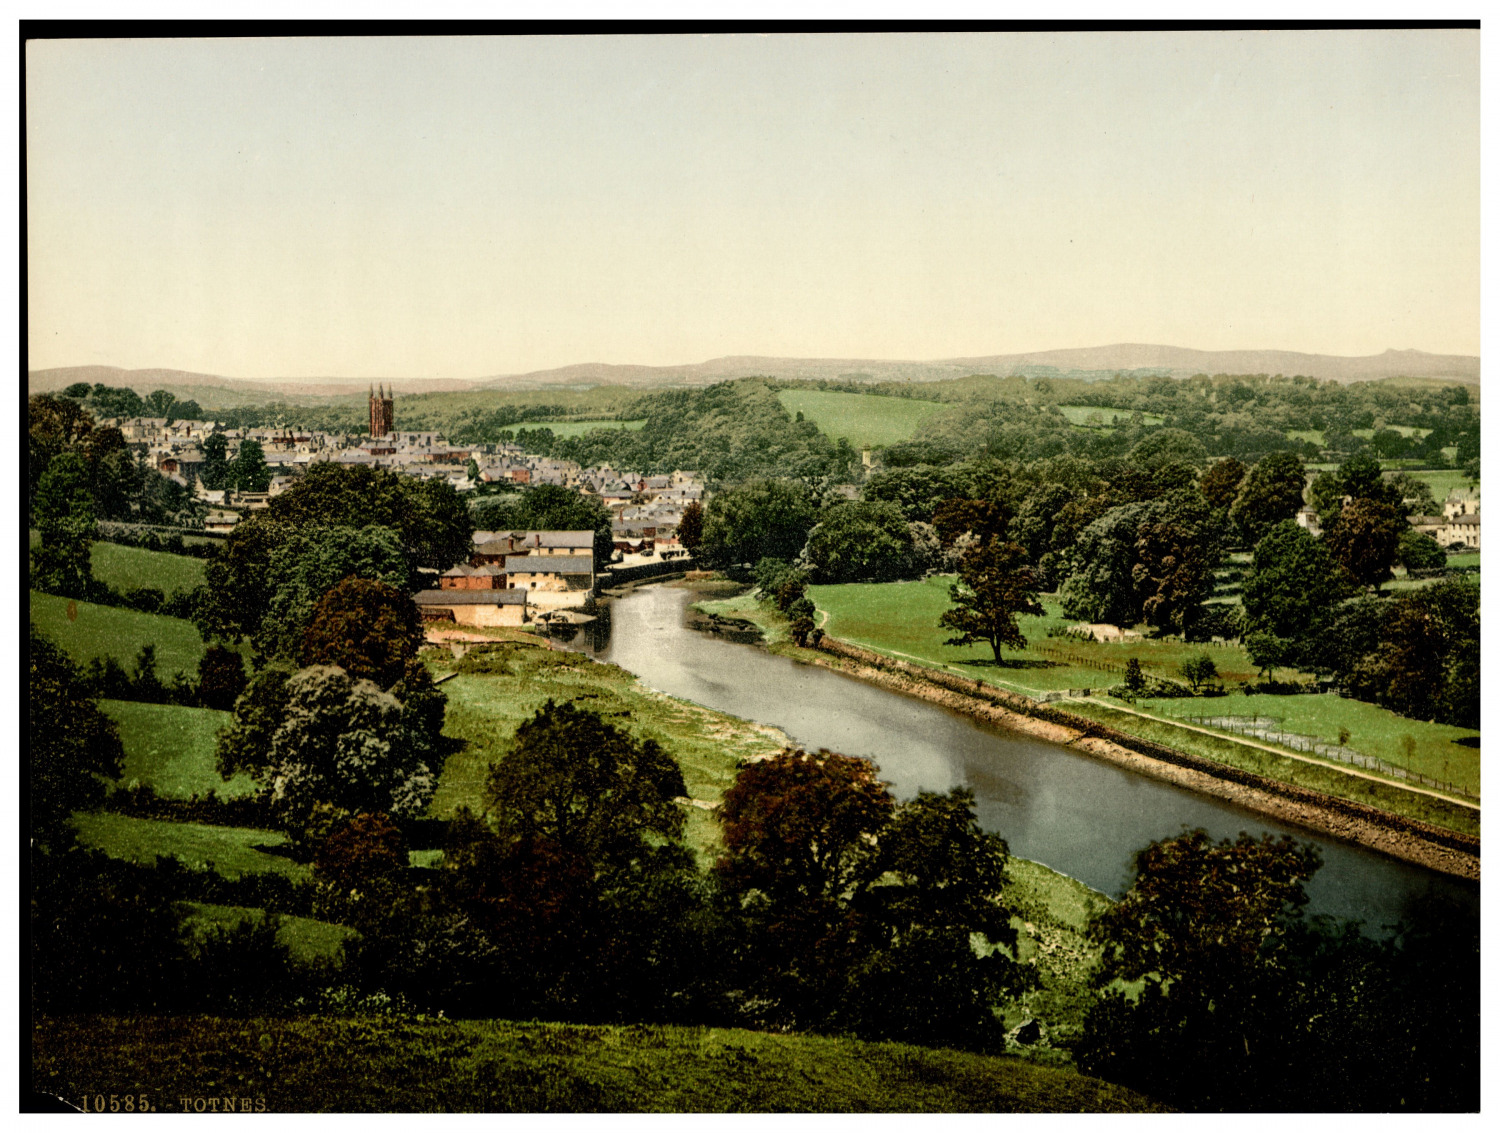 England. Totnes. Vintage photochrome by P.Z, photochrome Zurich photochromy,